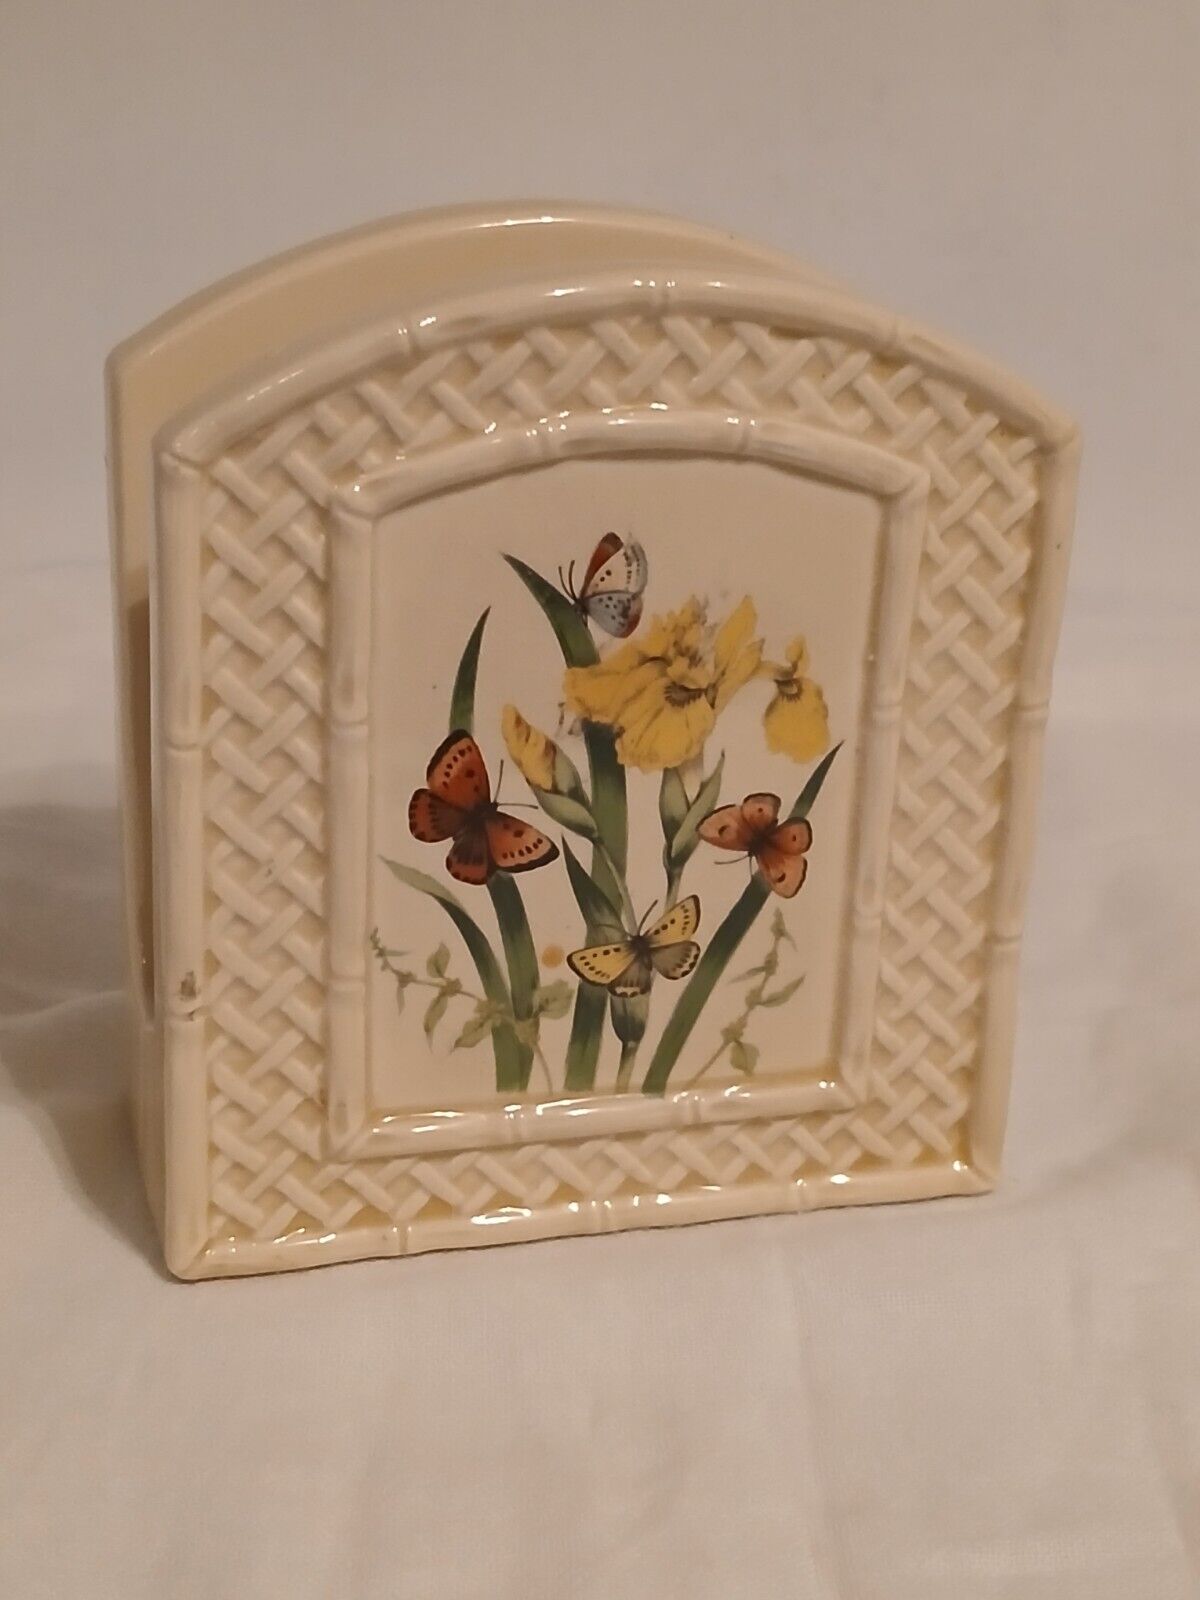 1978 Butterfly Gardens Trellis Enesco Ceramic Napkin Holder Flawless